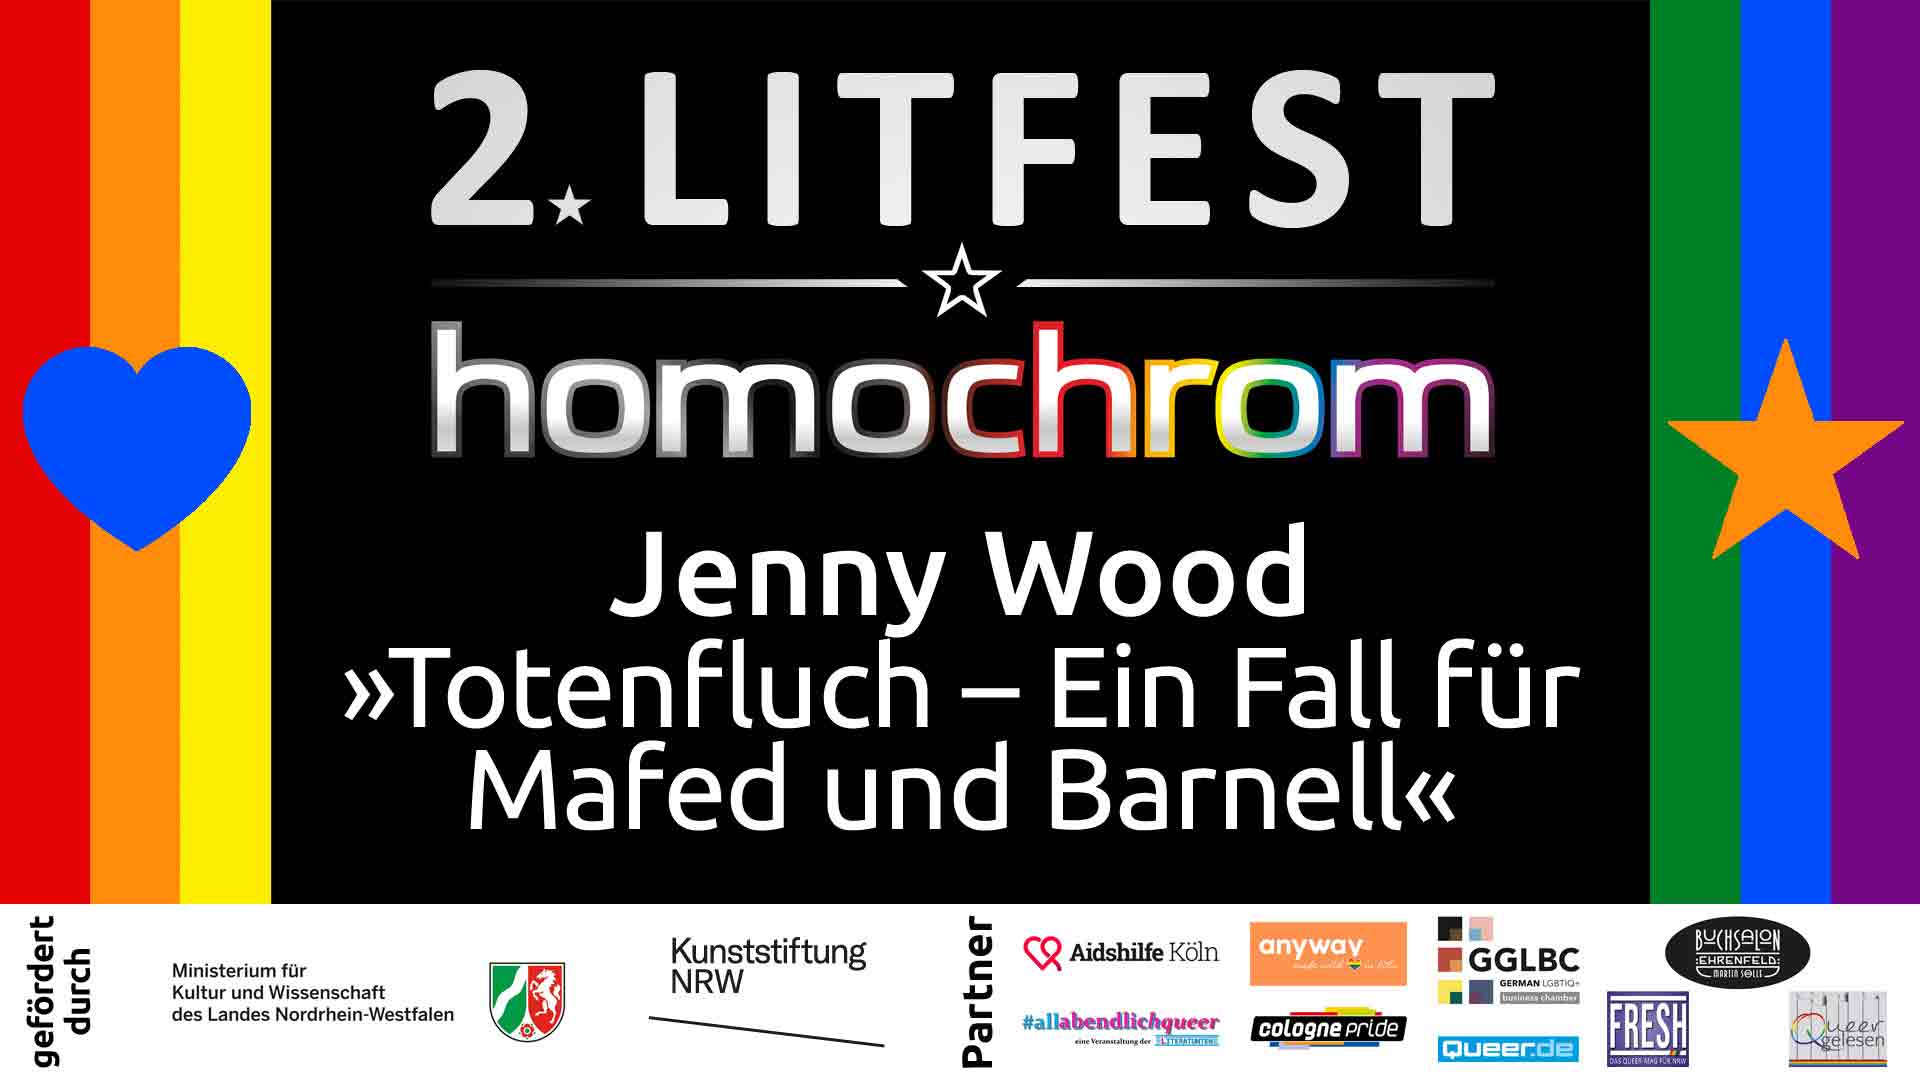 Youtube Video, Jenny Wood, 2. Litfest homochrom